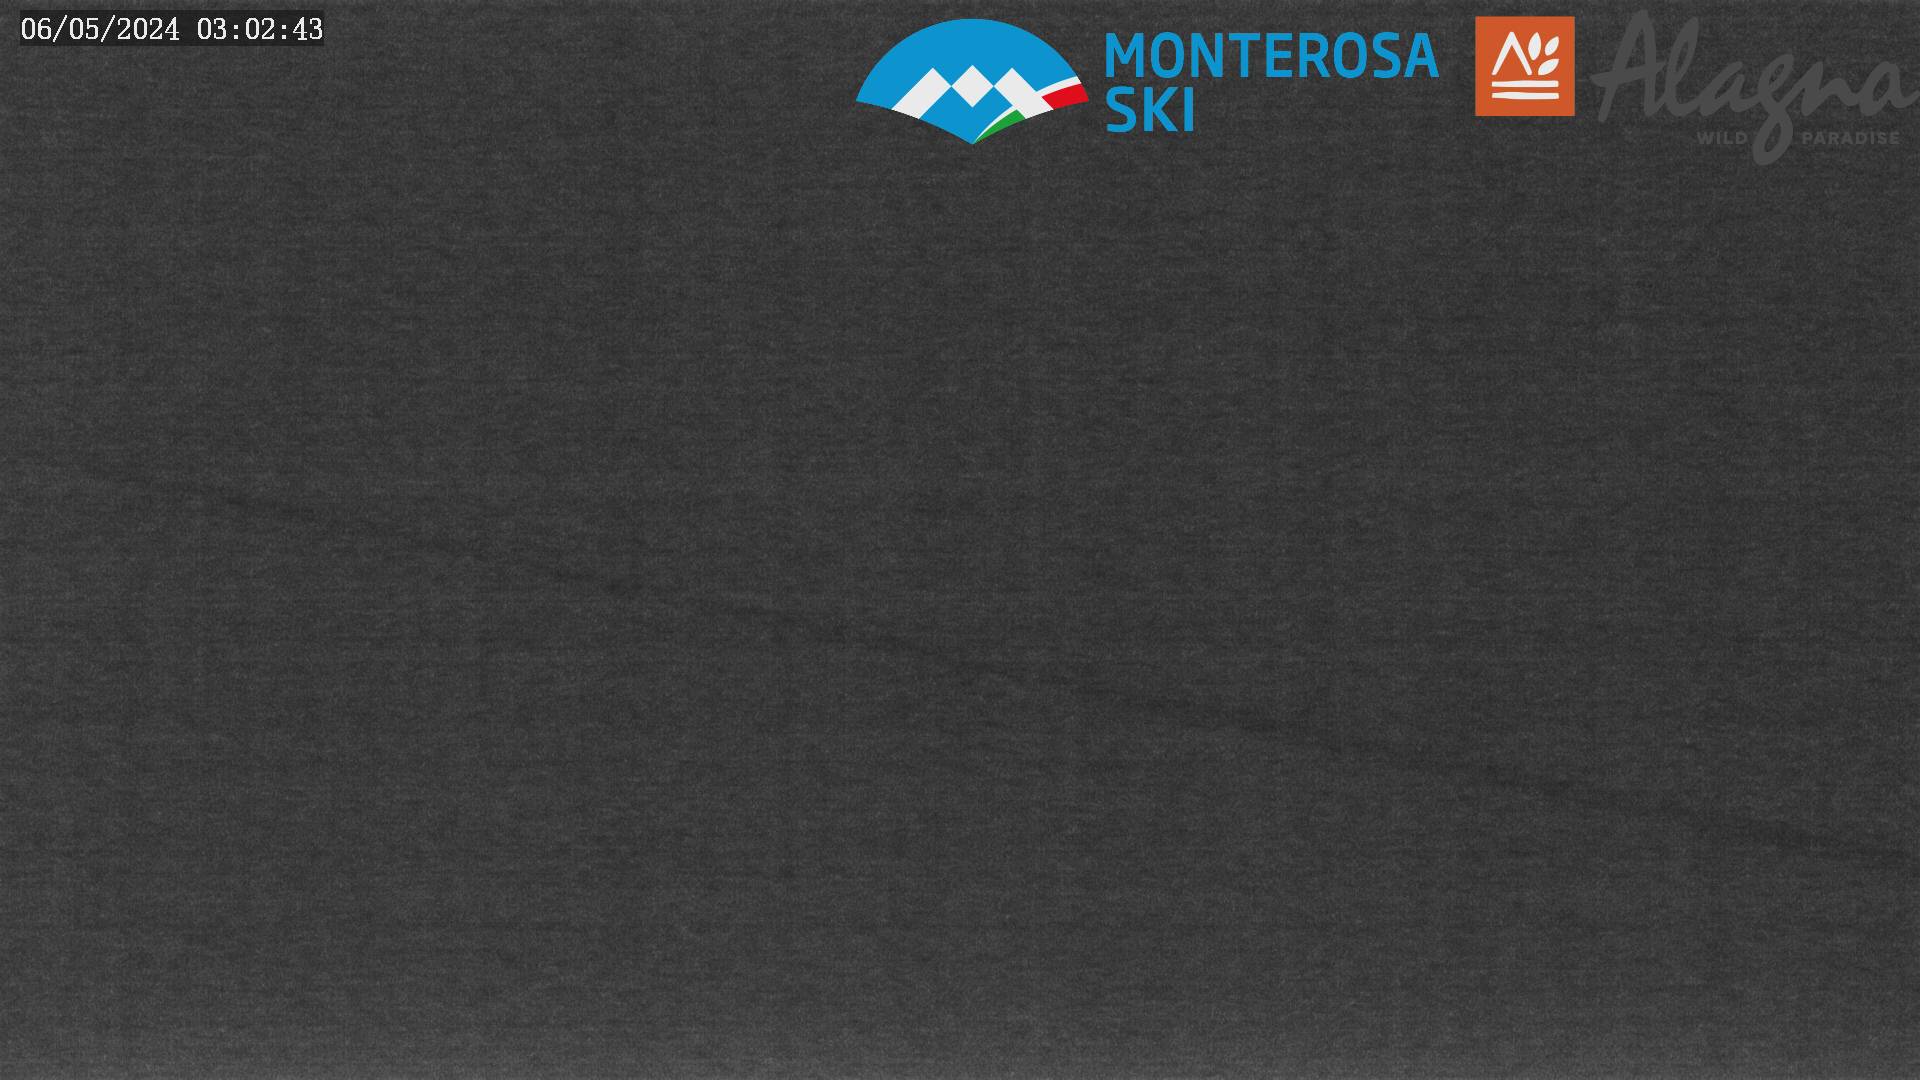 Panorama sul Monte Rosa